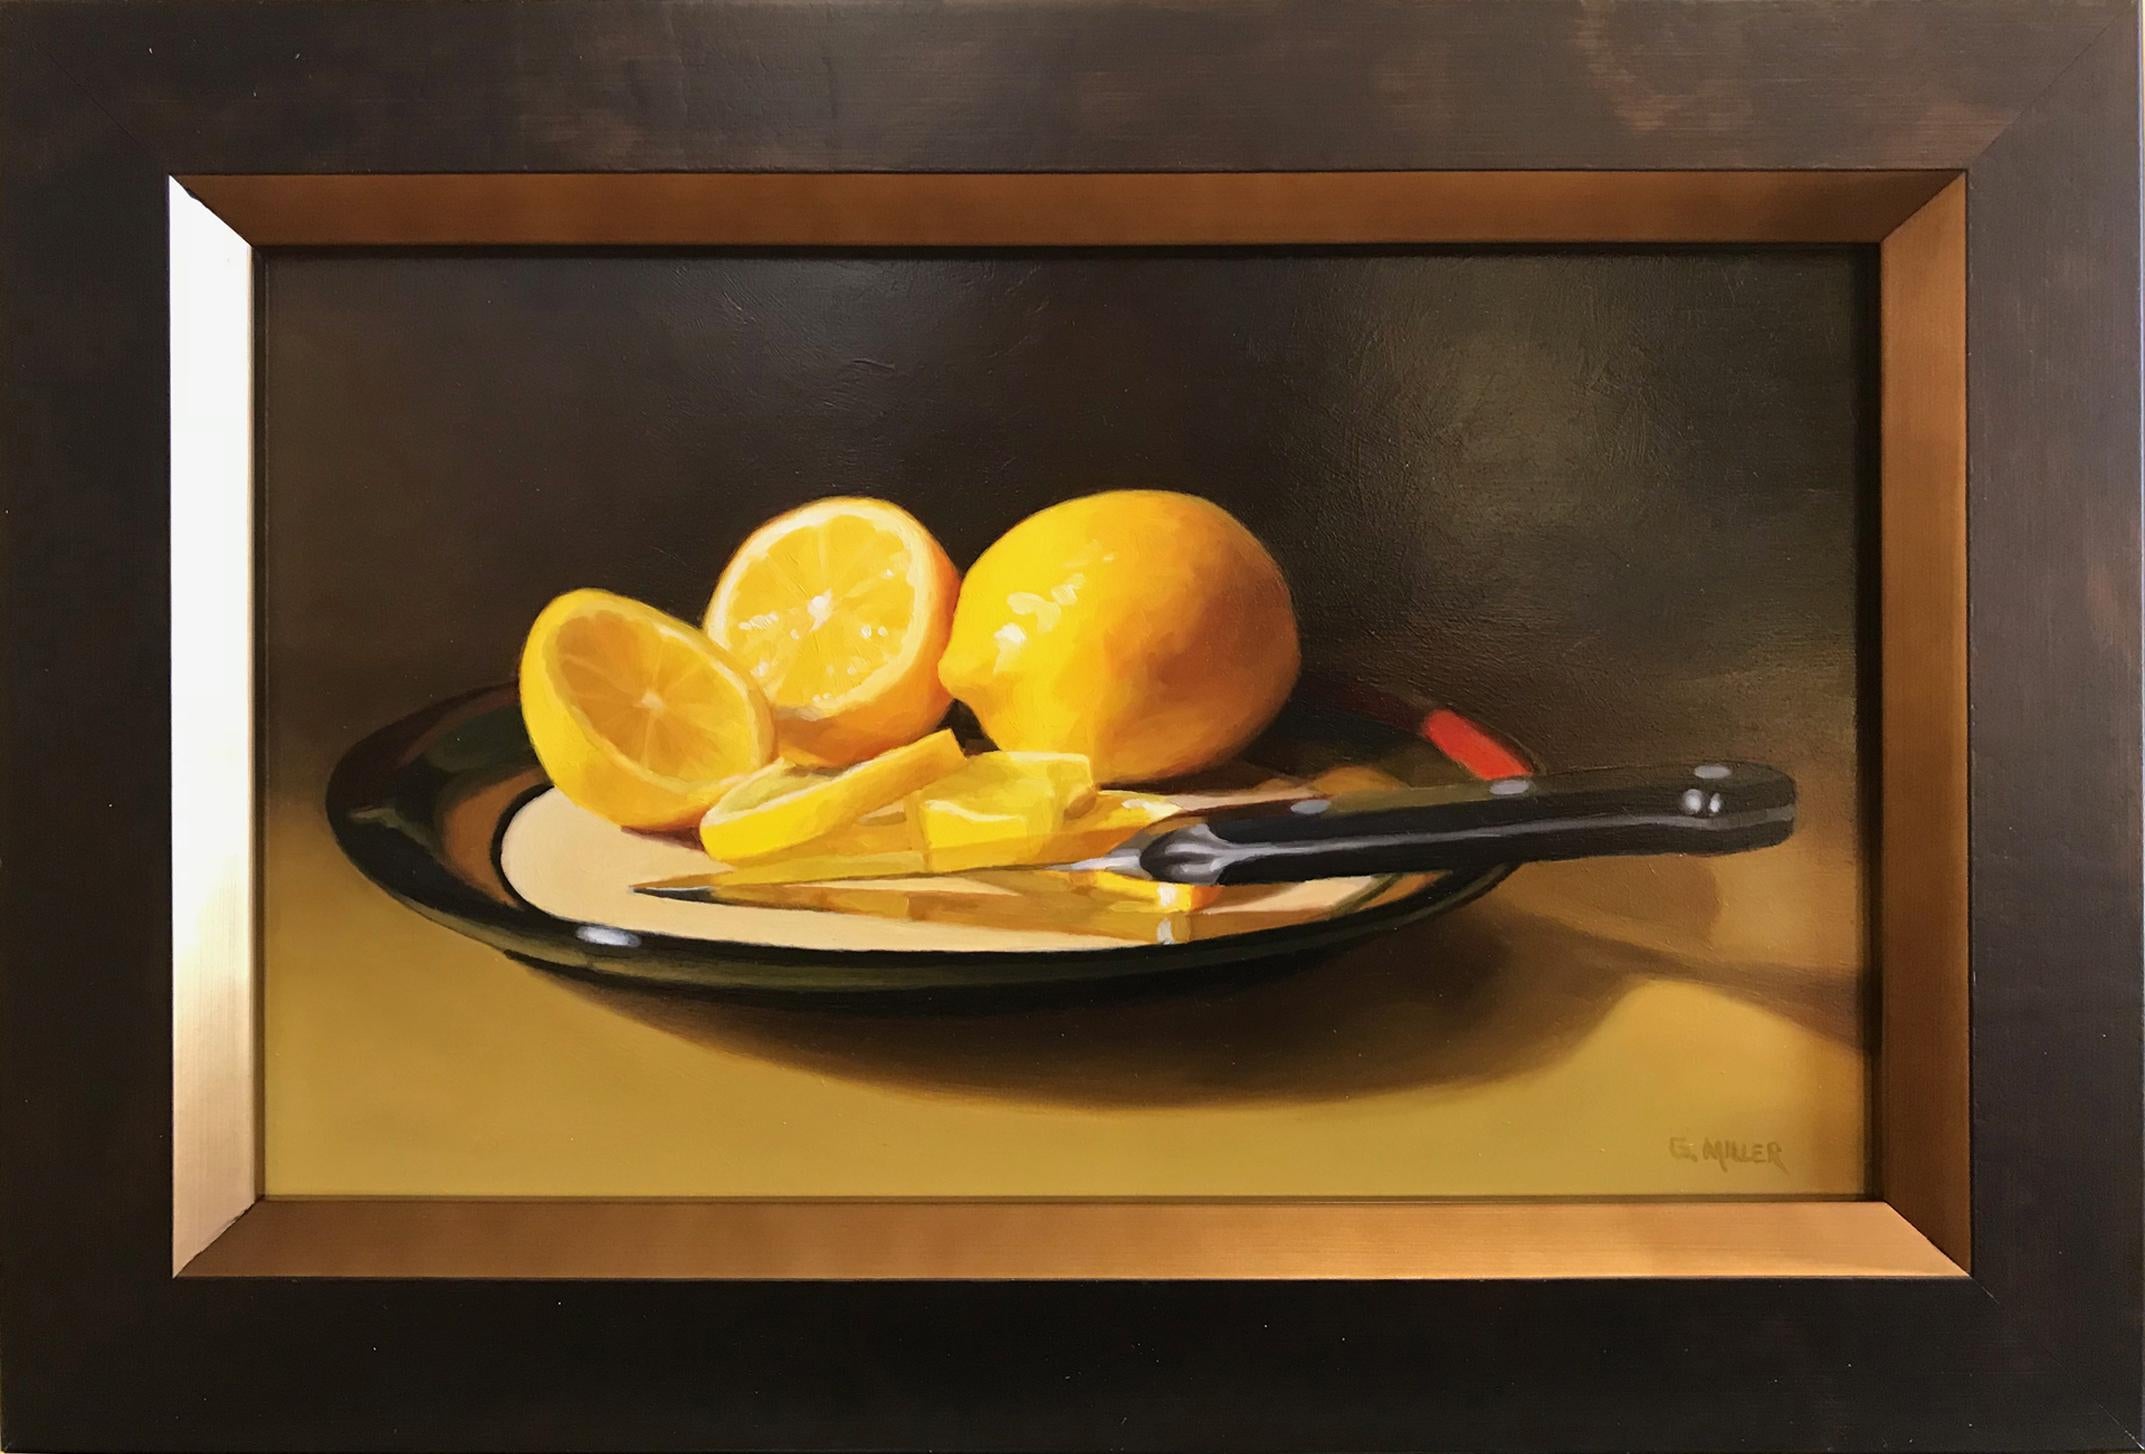 Lemon Fresh - Painting by Gary Miller